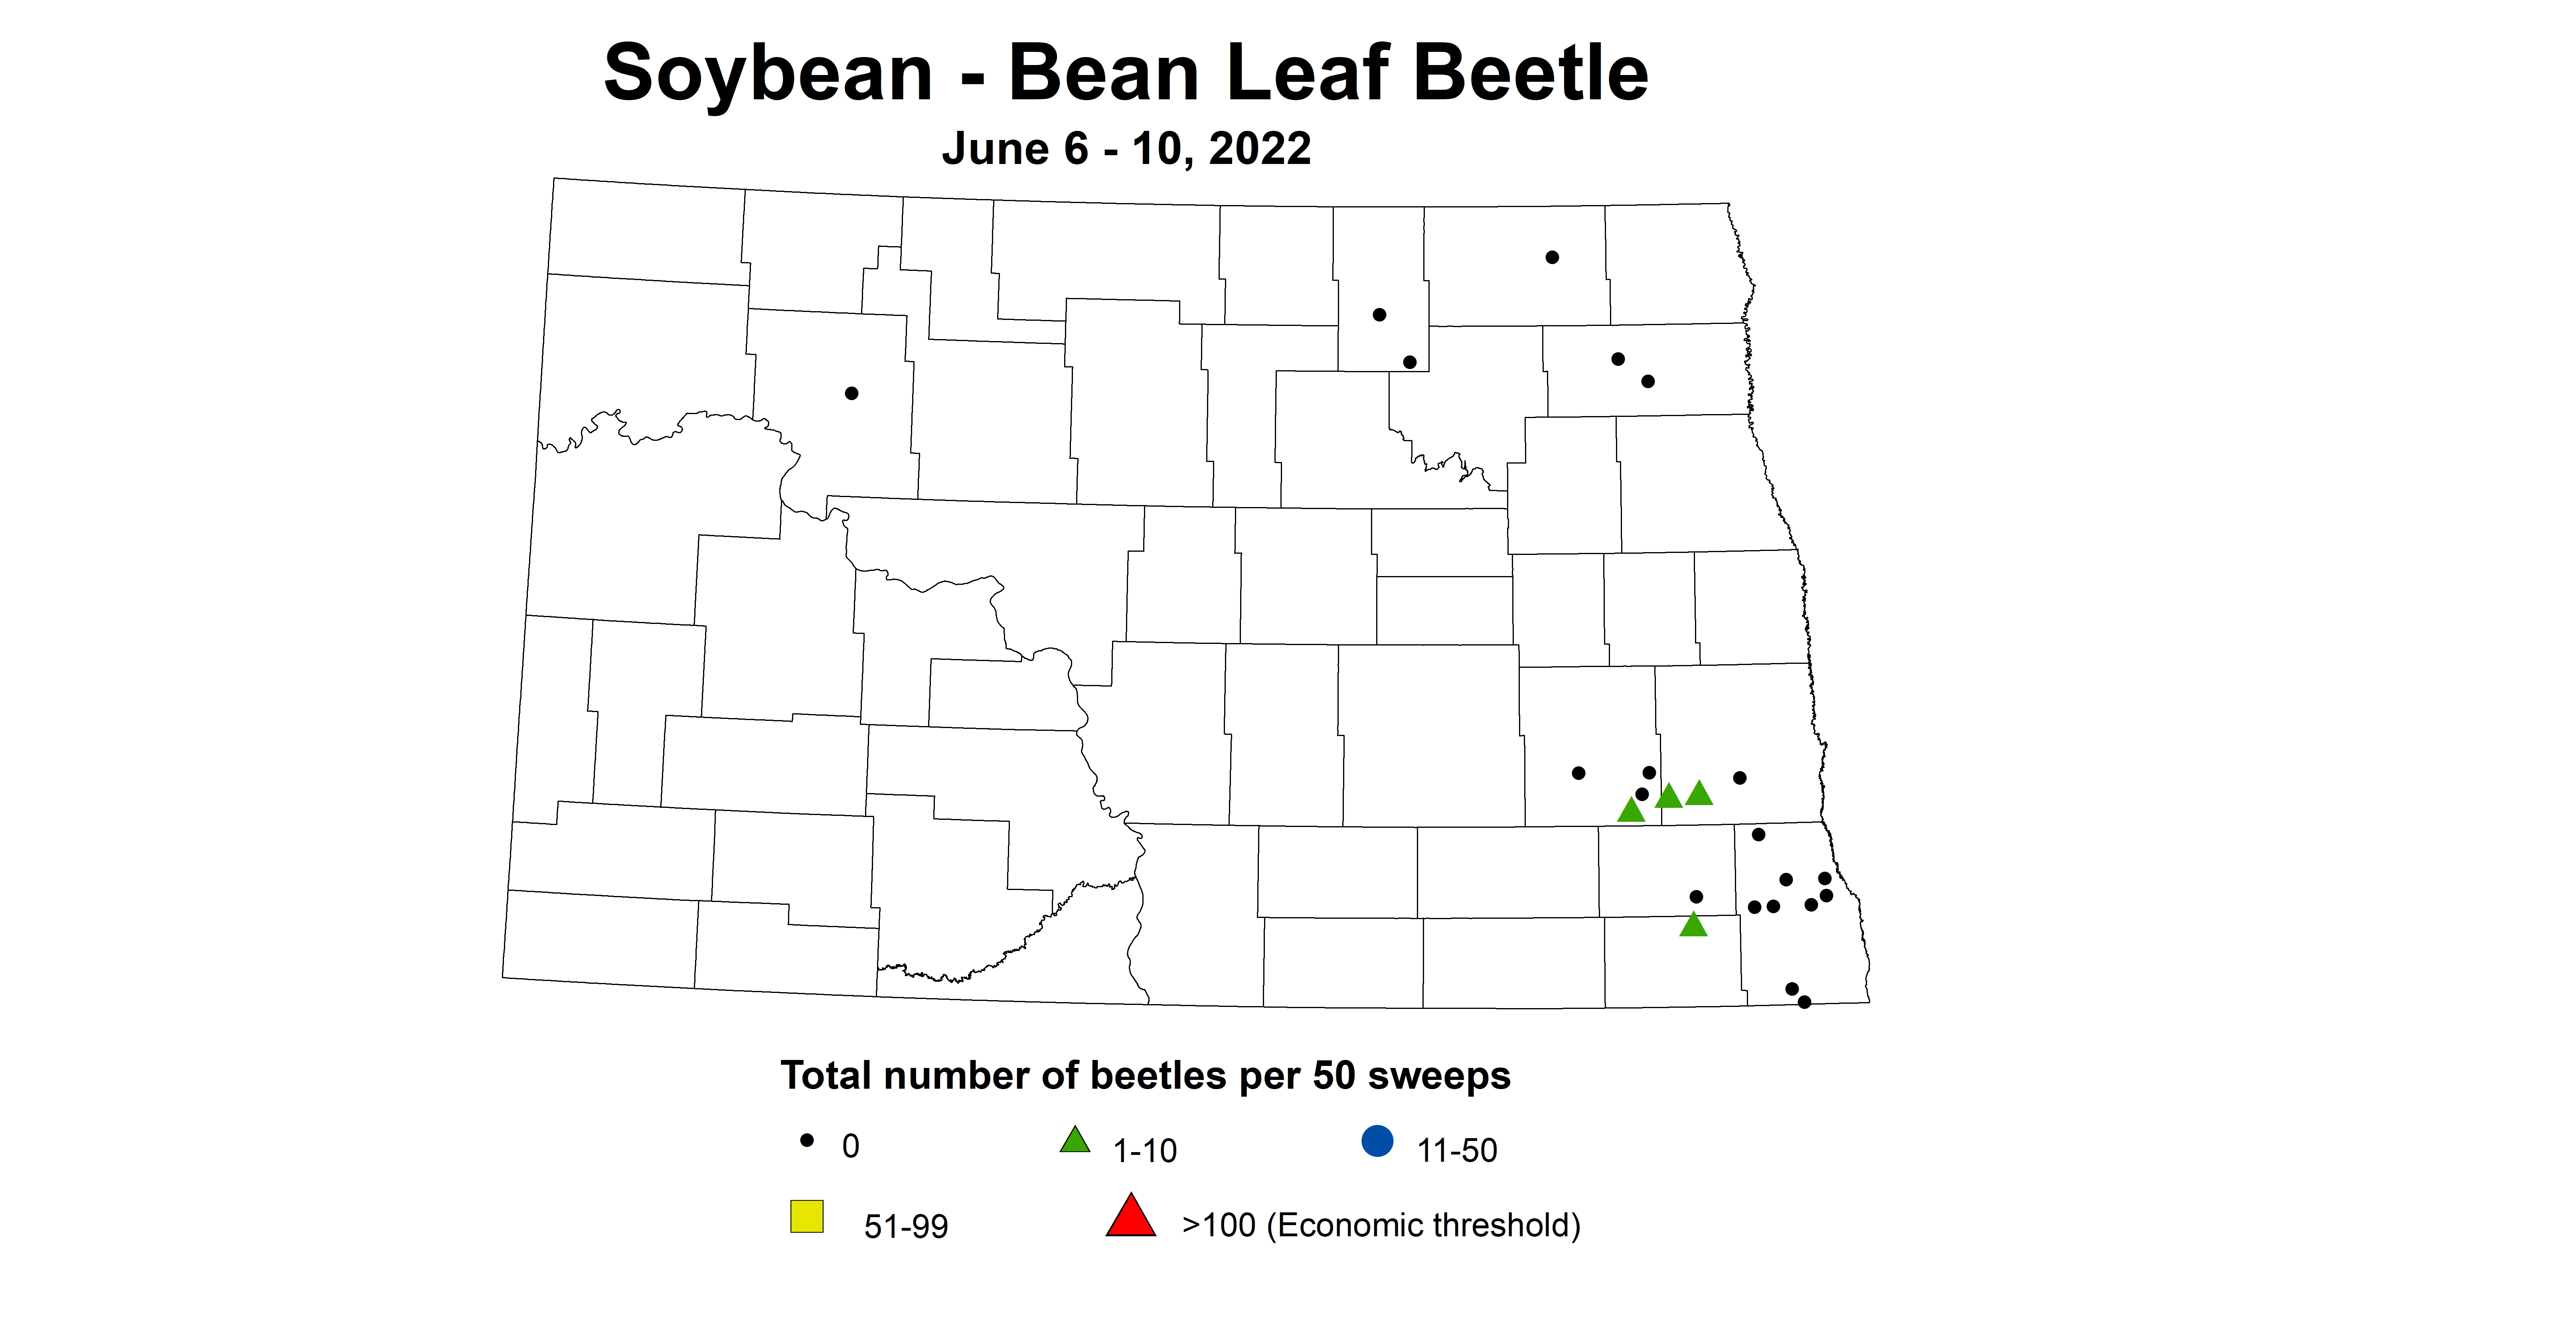 ND IPM map of soybean total number of beetles per 50 sweeps June 6-10, 2022